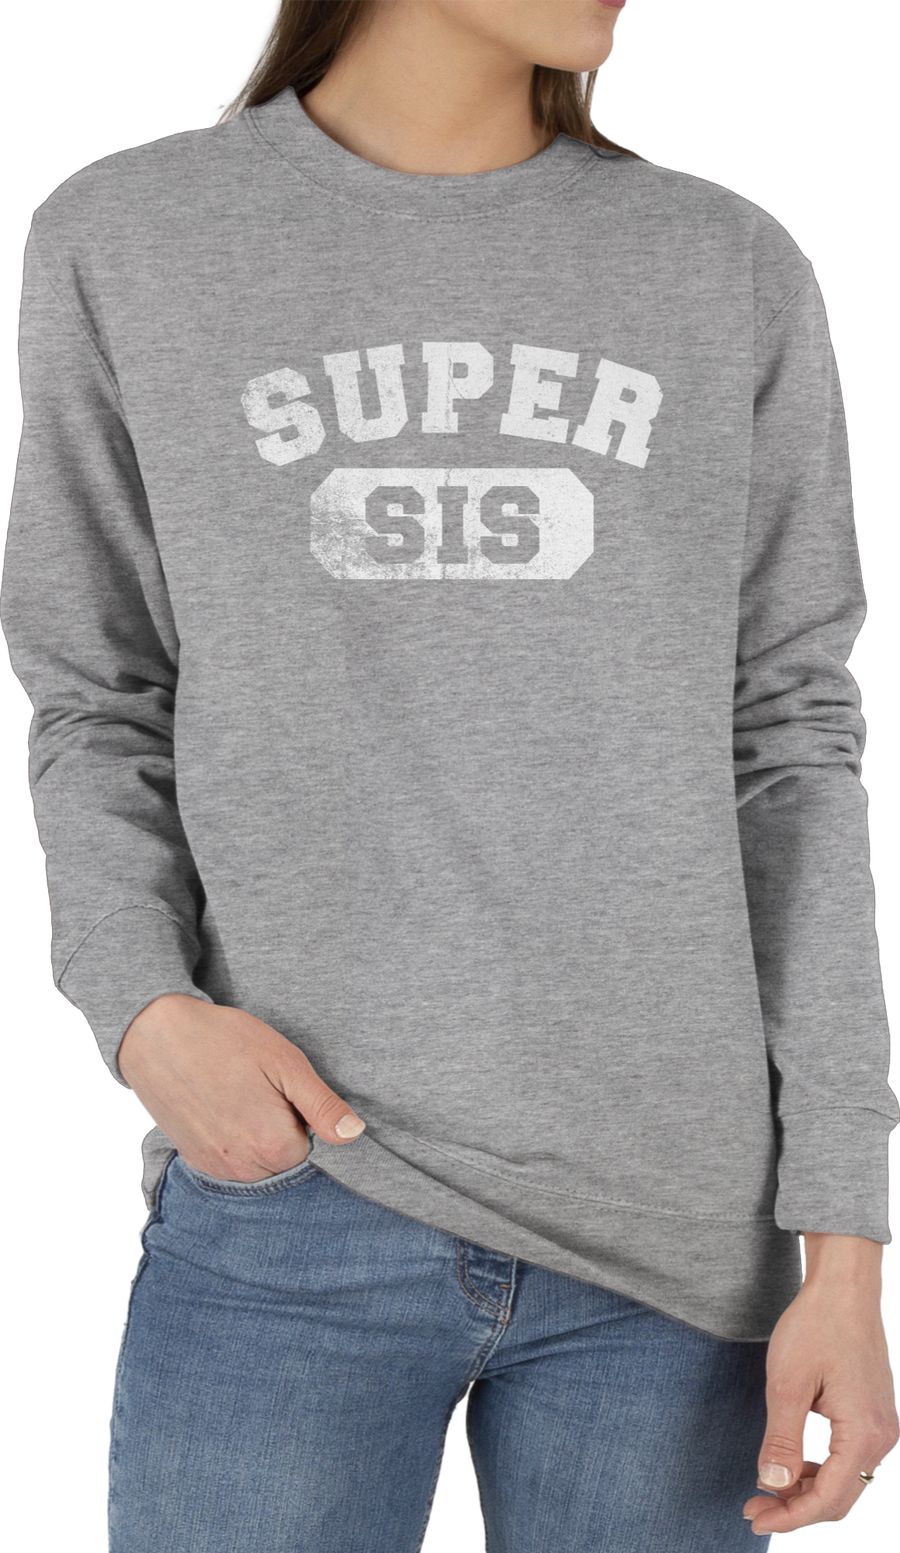 Super Sis - Vintage-&Collegestil